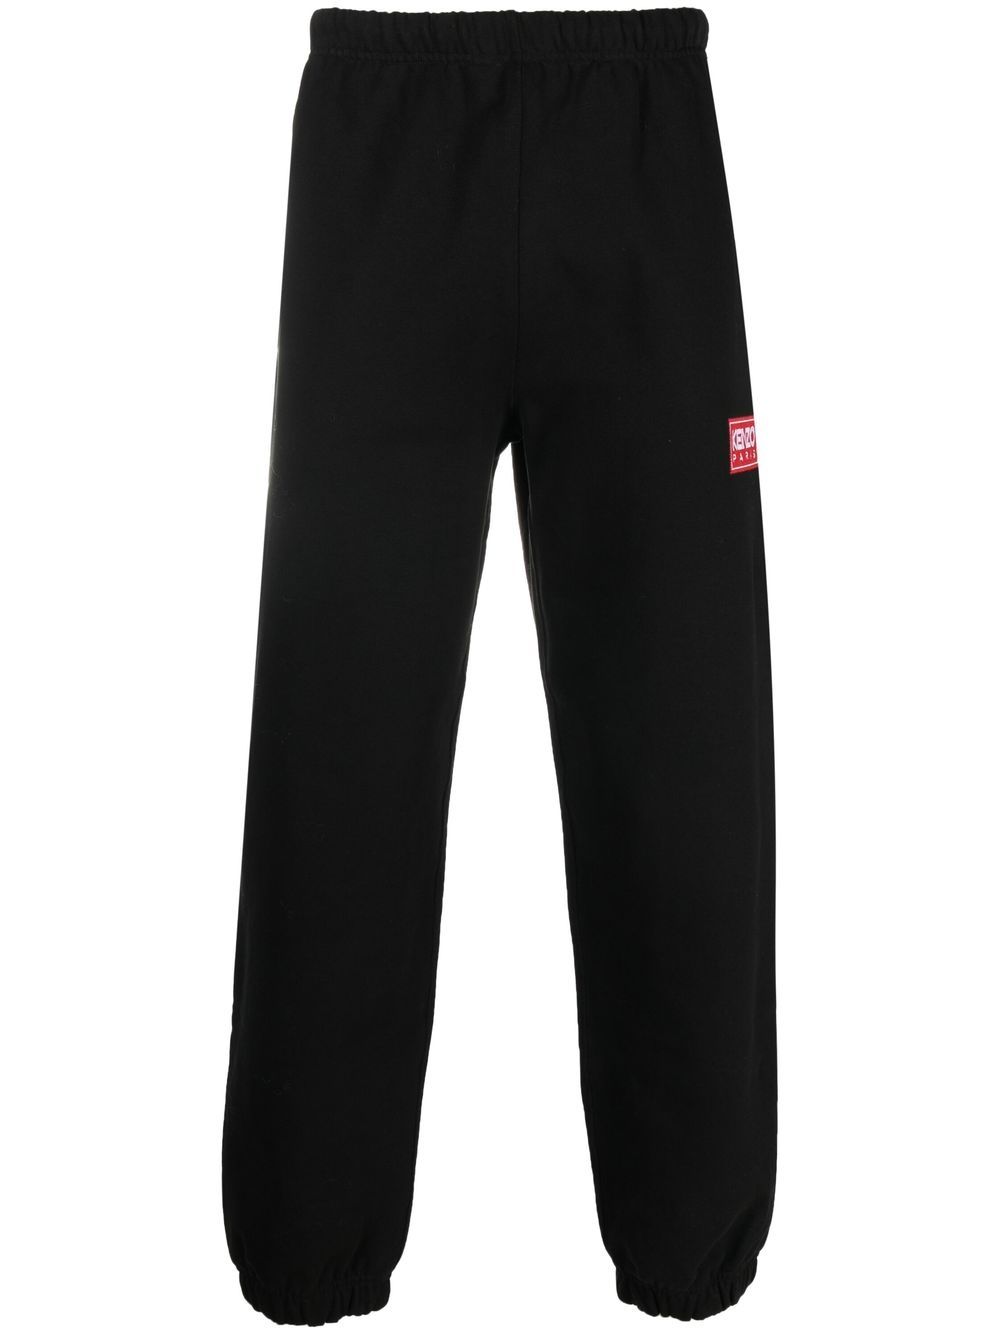 Kenzo Men's Black Monogram Track Pants, Size Medium FC65PA7924MF-99J -  Jomashop